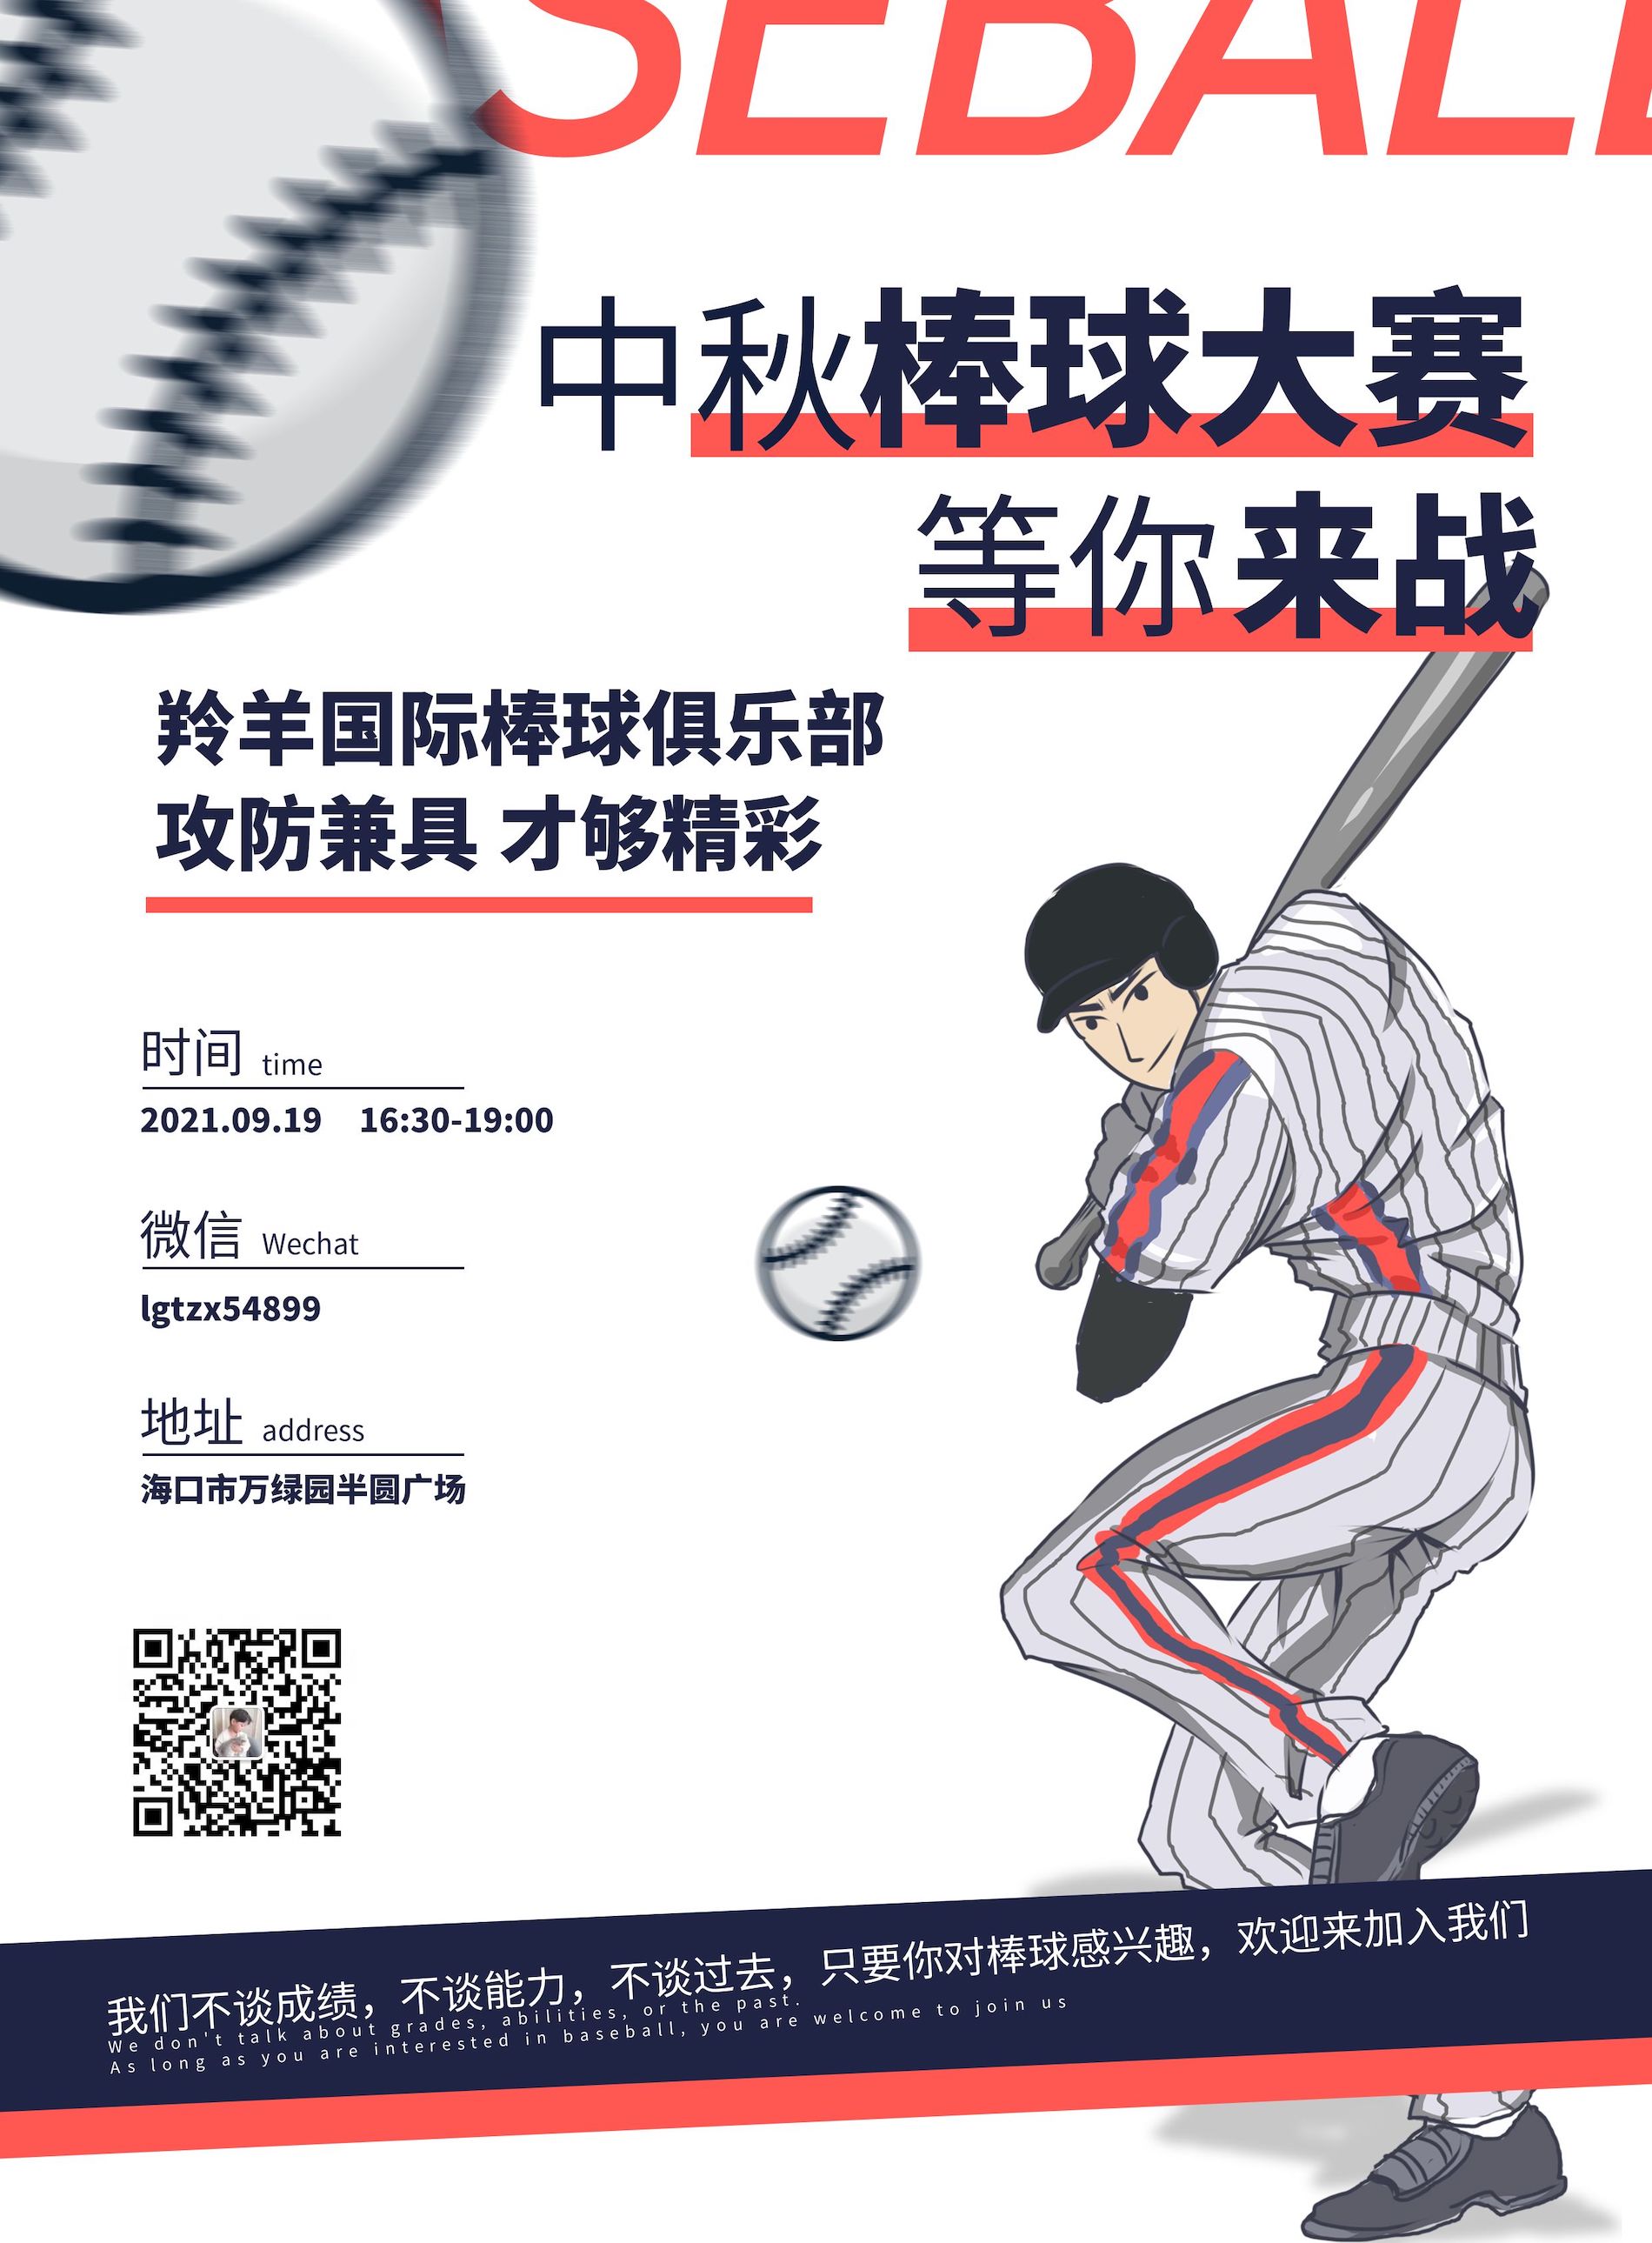 3-Baseball.jpg